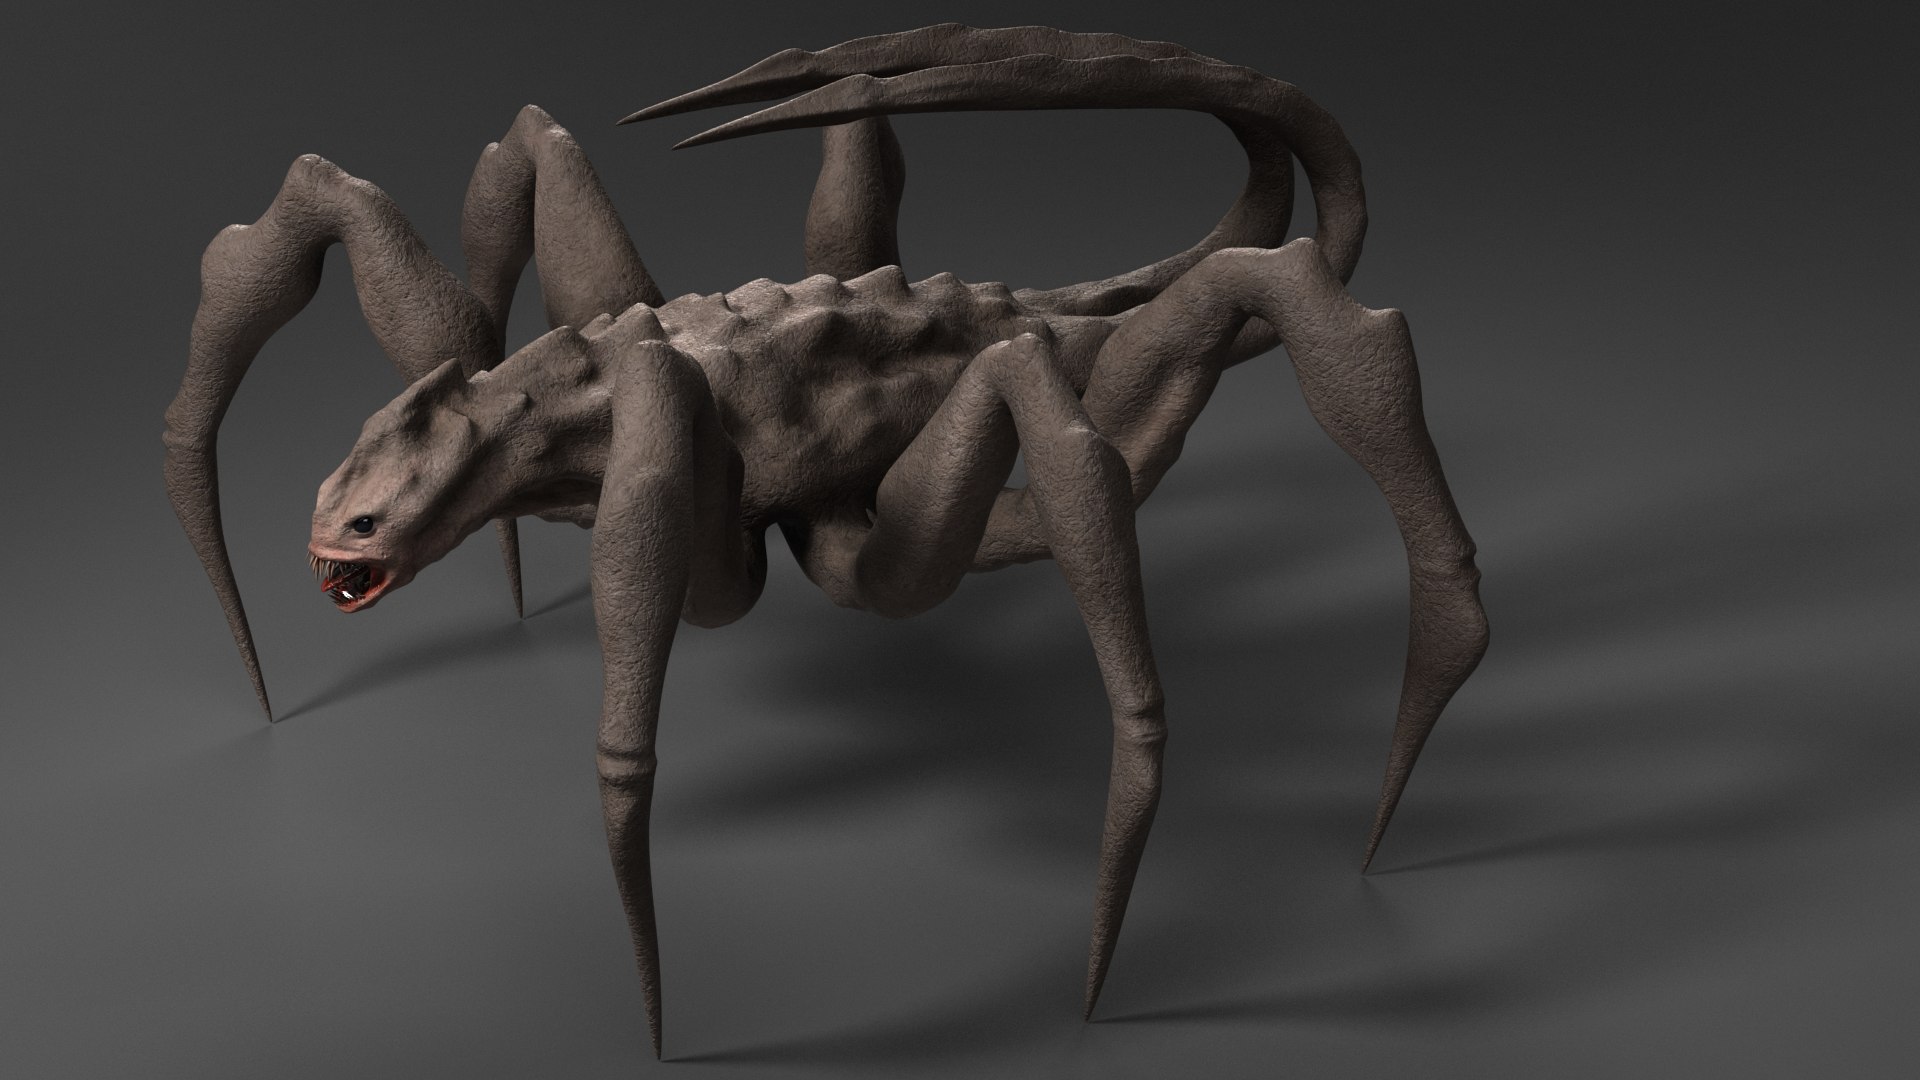 Spider Monster 3D Model - TurboSquid 1599604